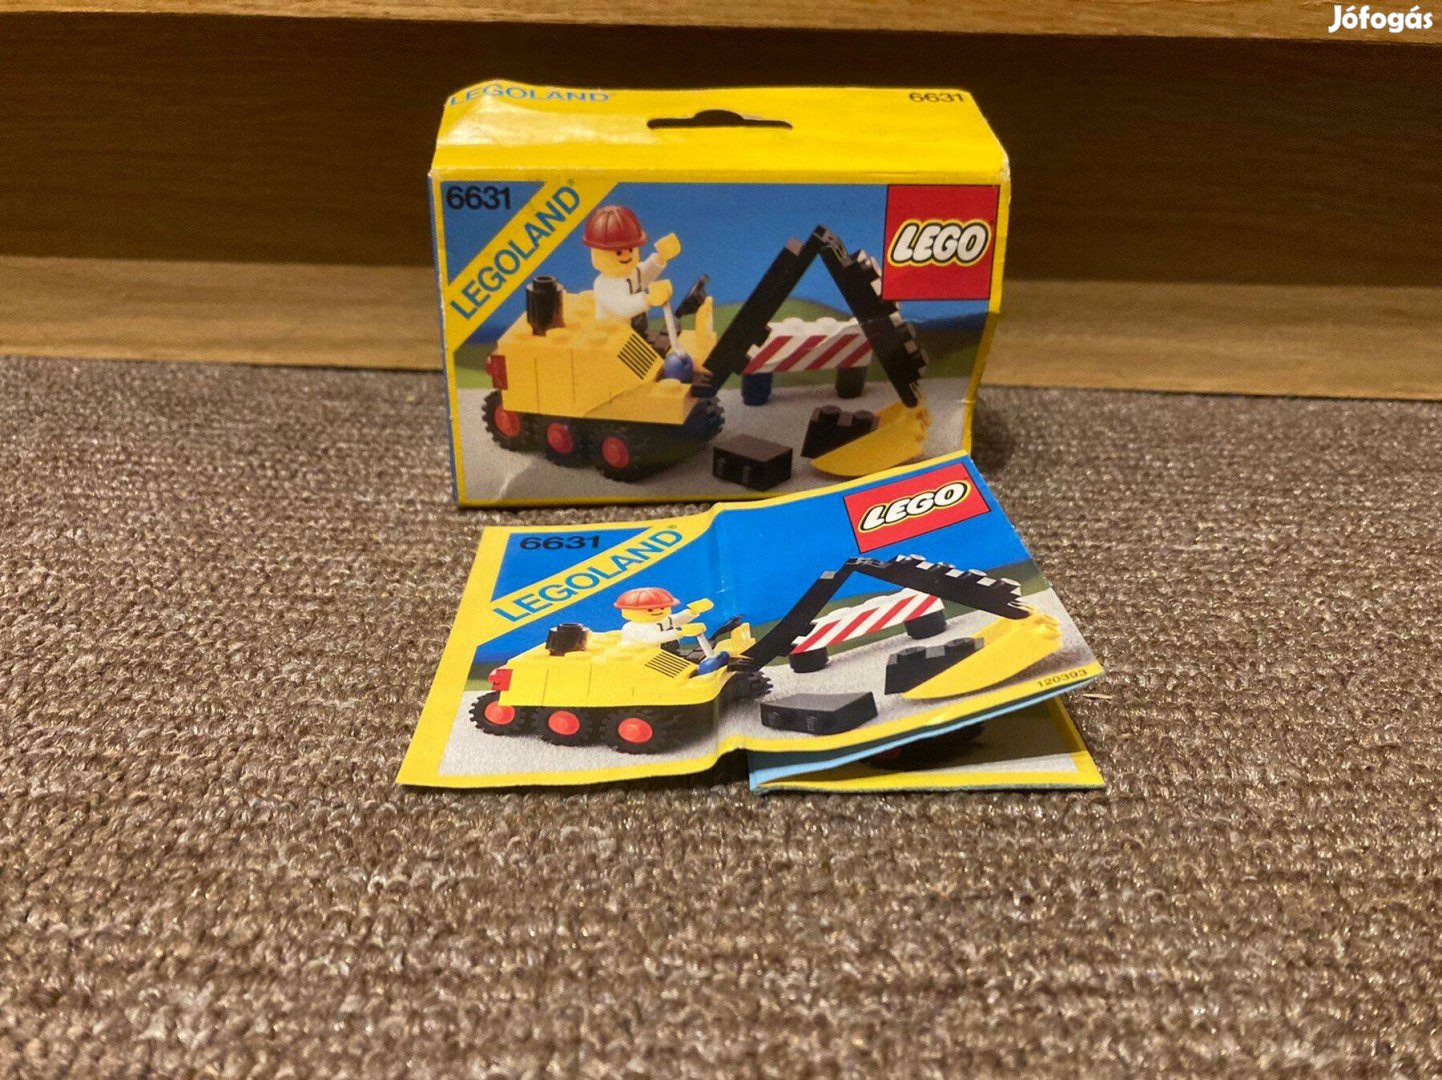 Lego 6631 Town